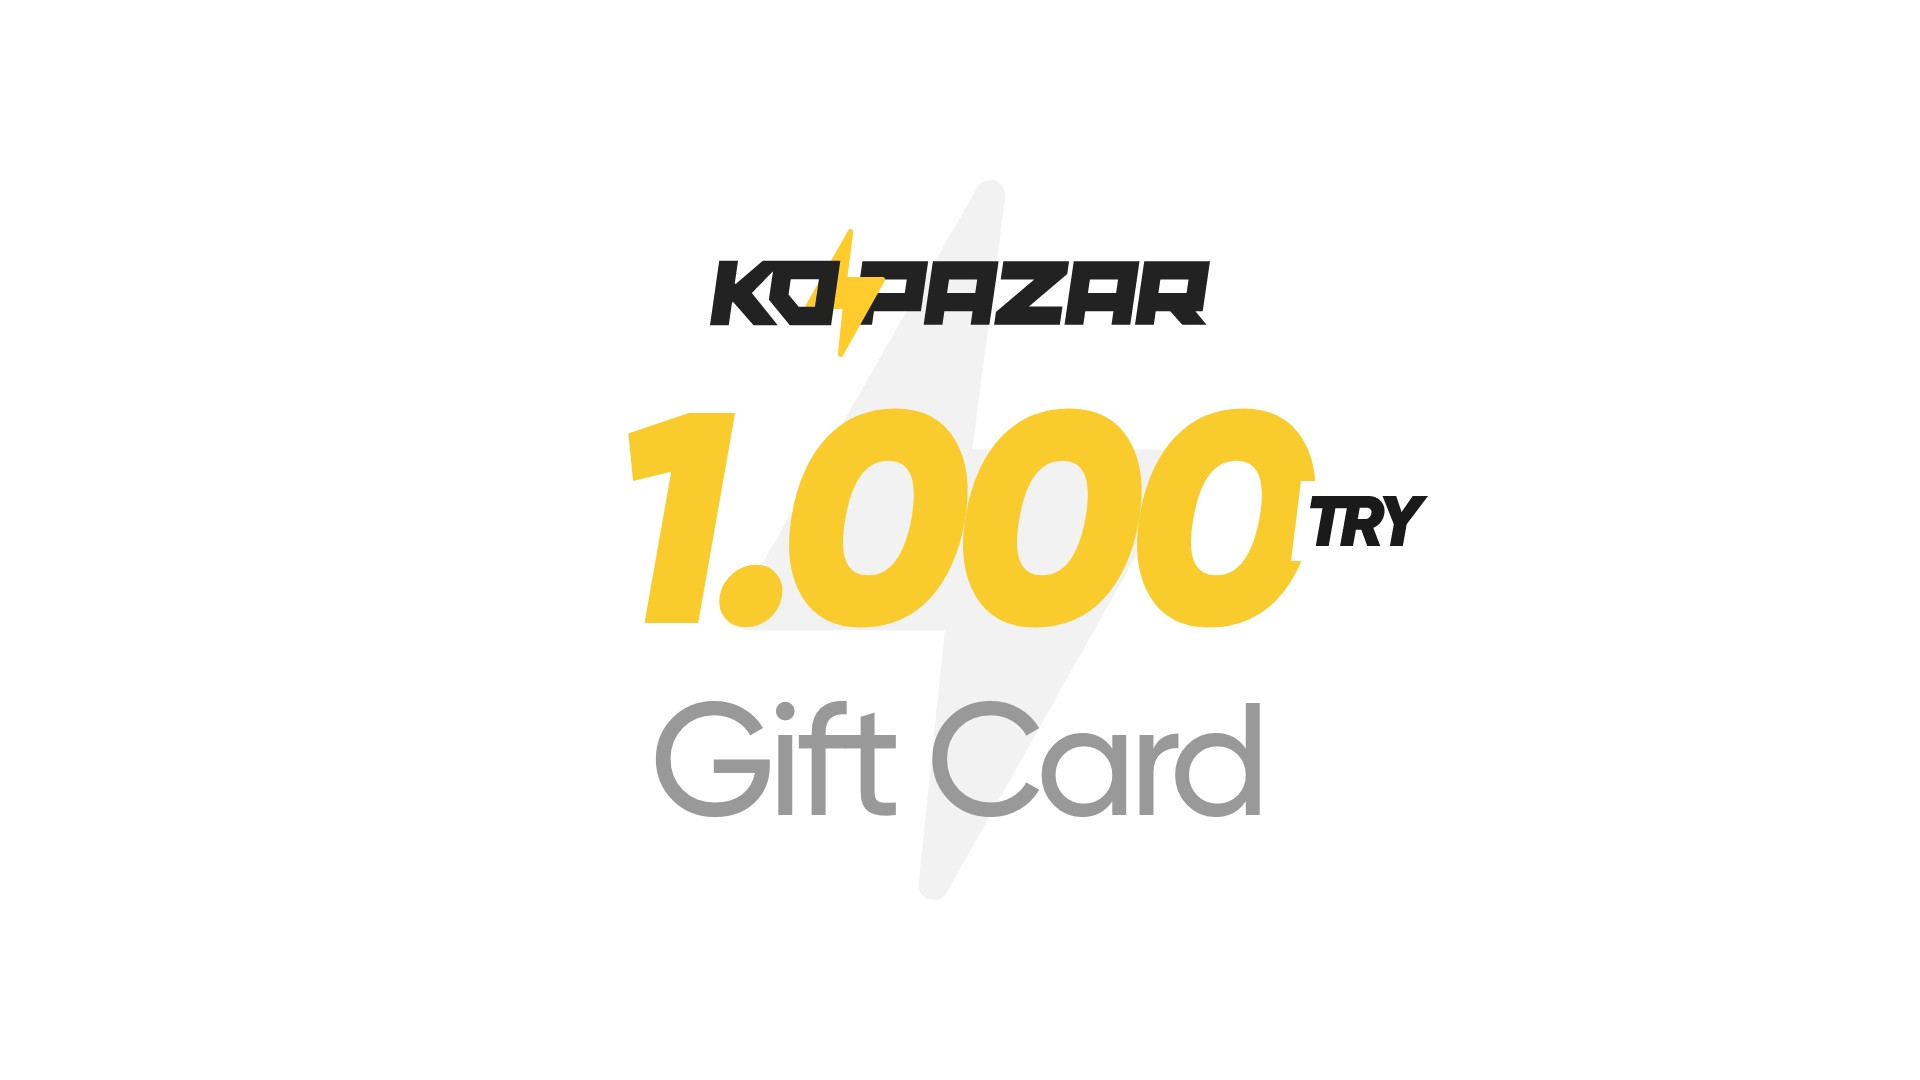 Kopazar 1000 TRY Gift Card